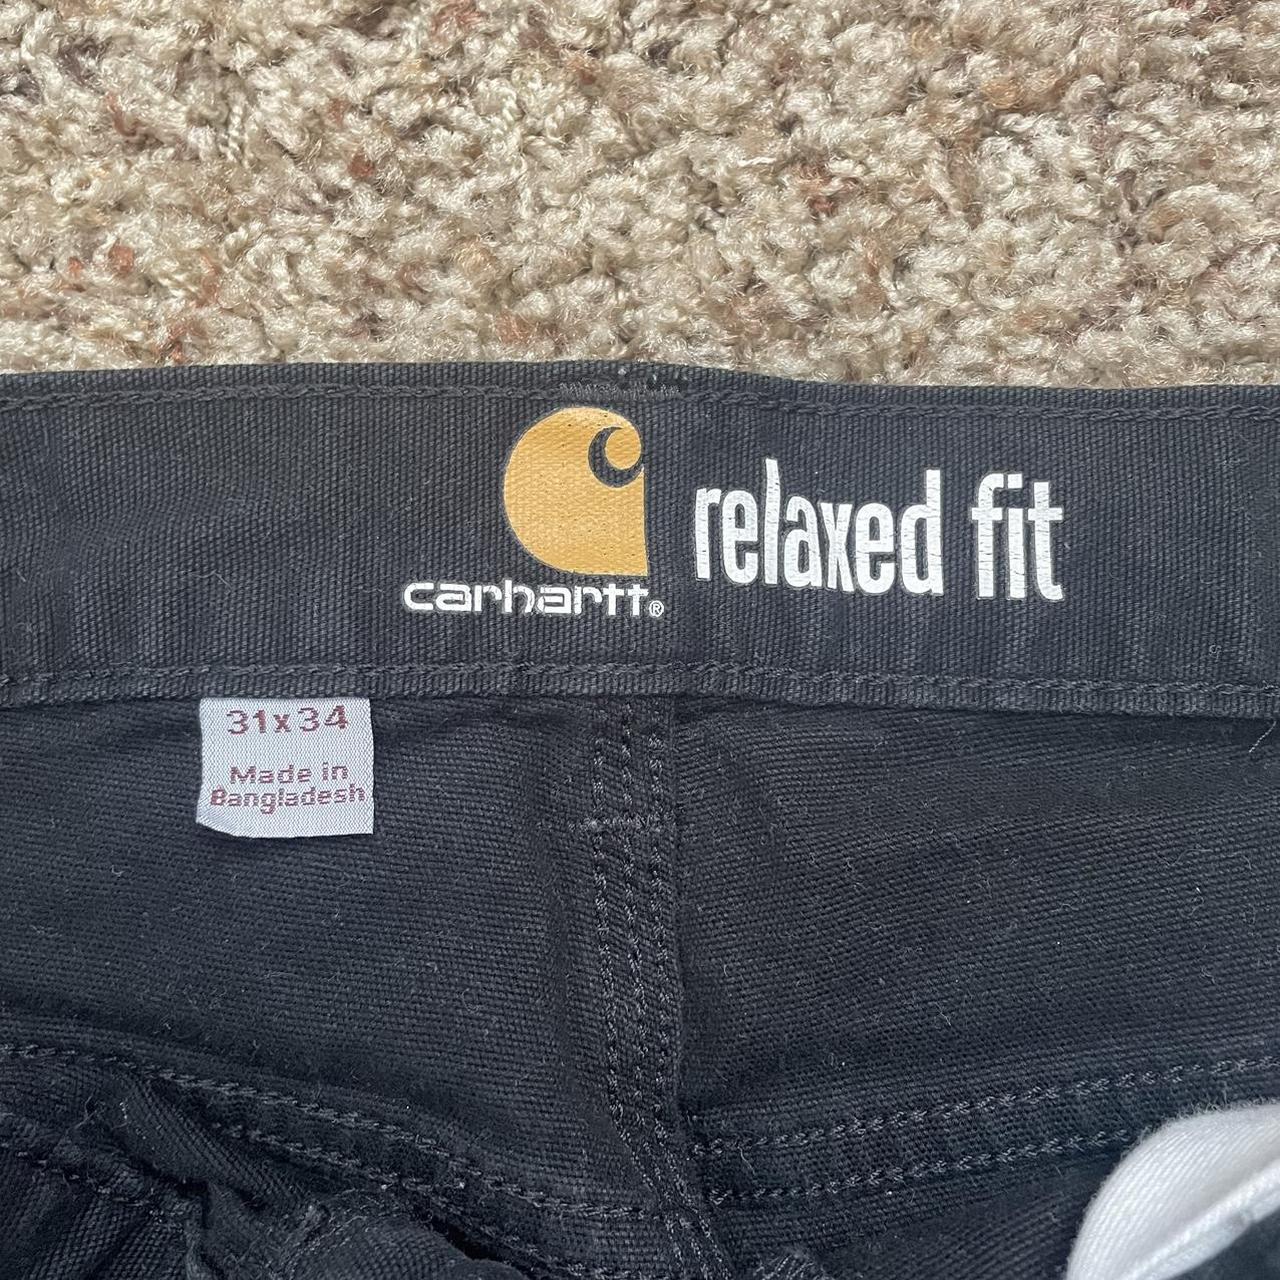 Carhartt Black Pants Relaxed Fit 31x34 #carhartt... - Depop